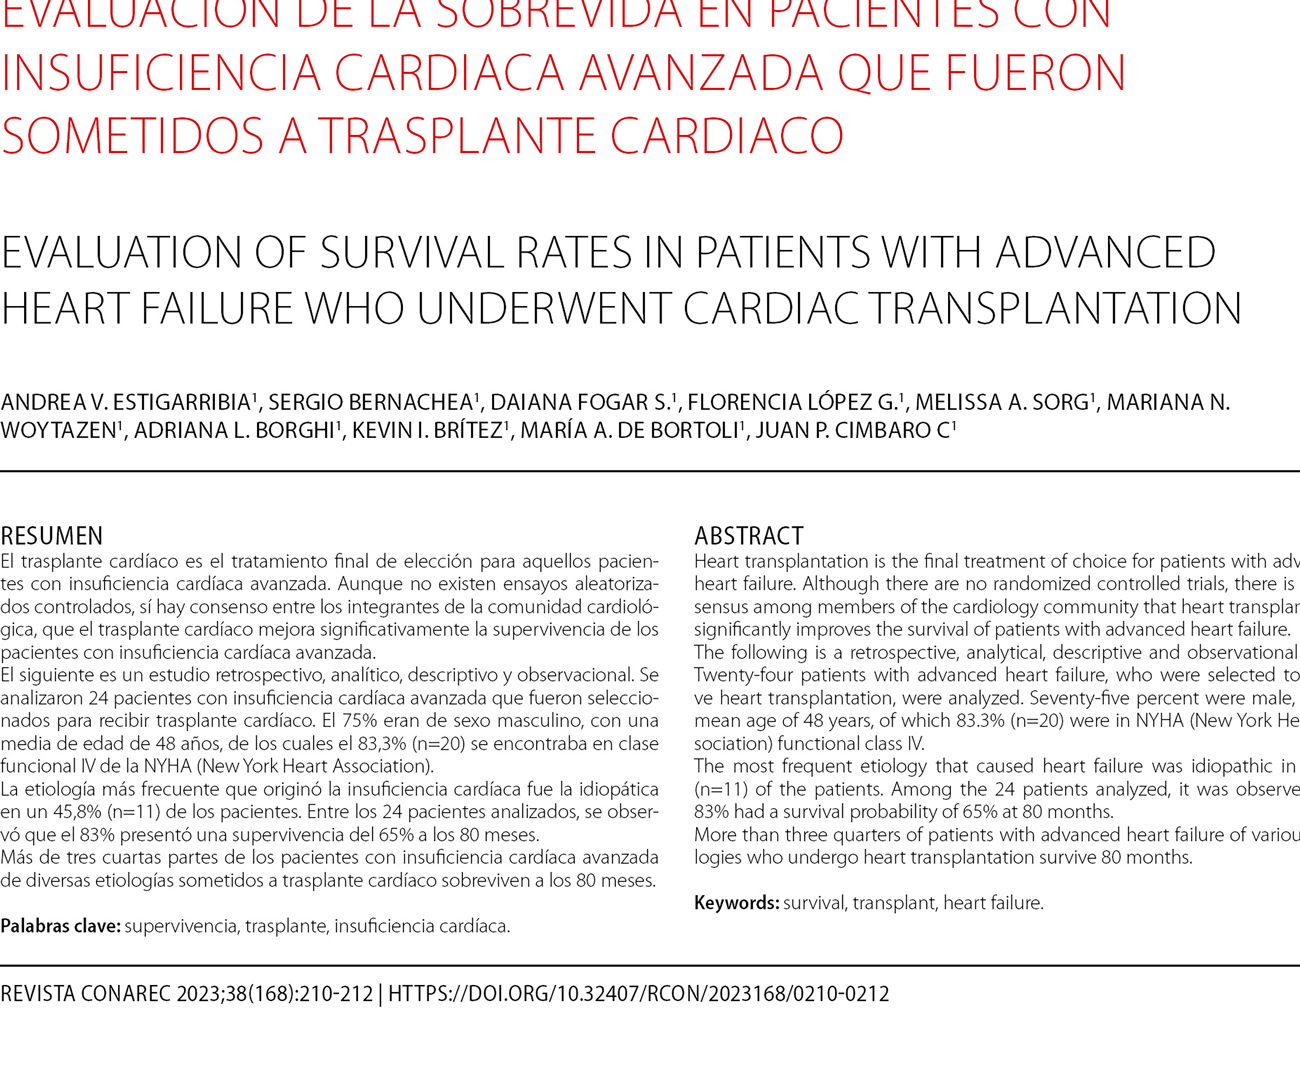 Evaluación de la sobrevida en pacientes con insuficiencia cardiaca avanzada que fueron sometidos a trasplante cardiaco